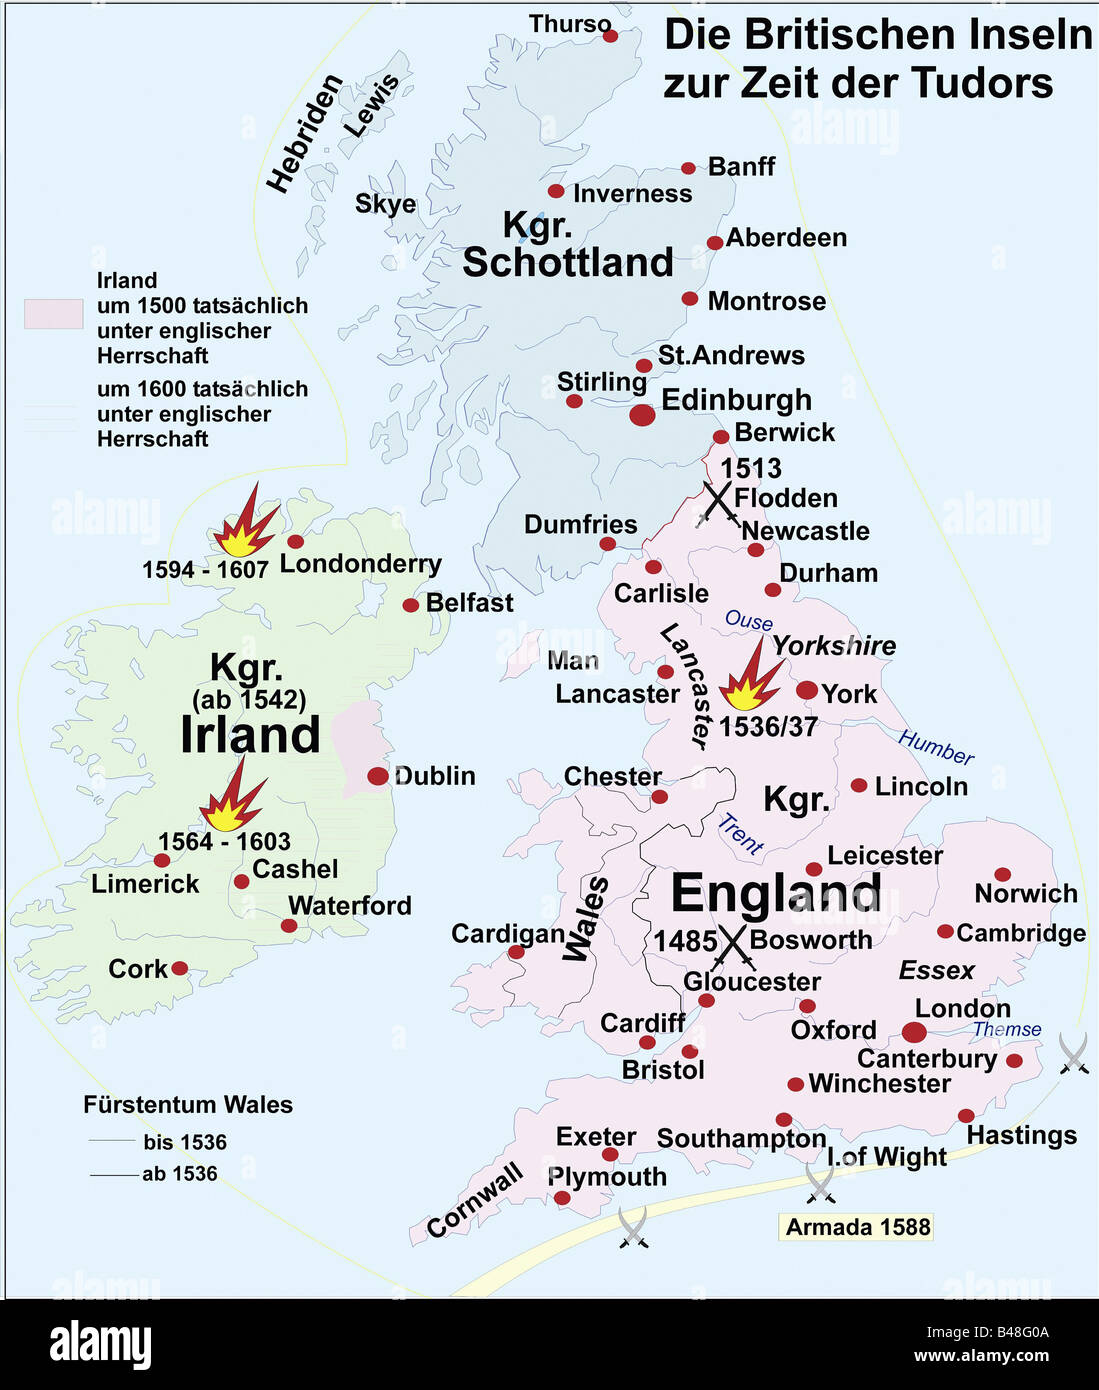 Cartografia, mappe storiche, tempi moderni, Isole britanniche al tempo dei Tudors 1485 - 1603, Foto Stock